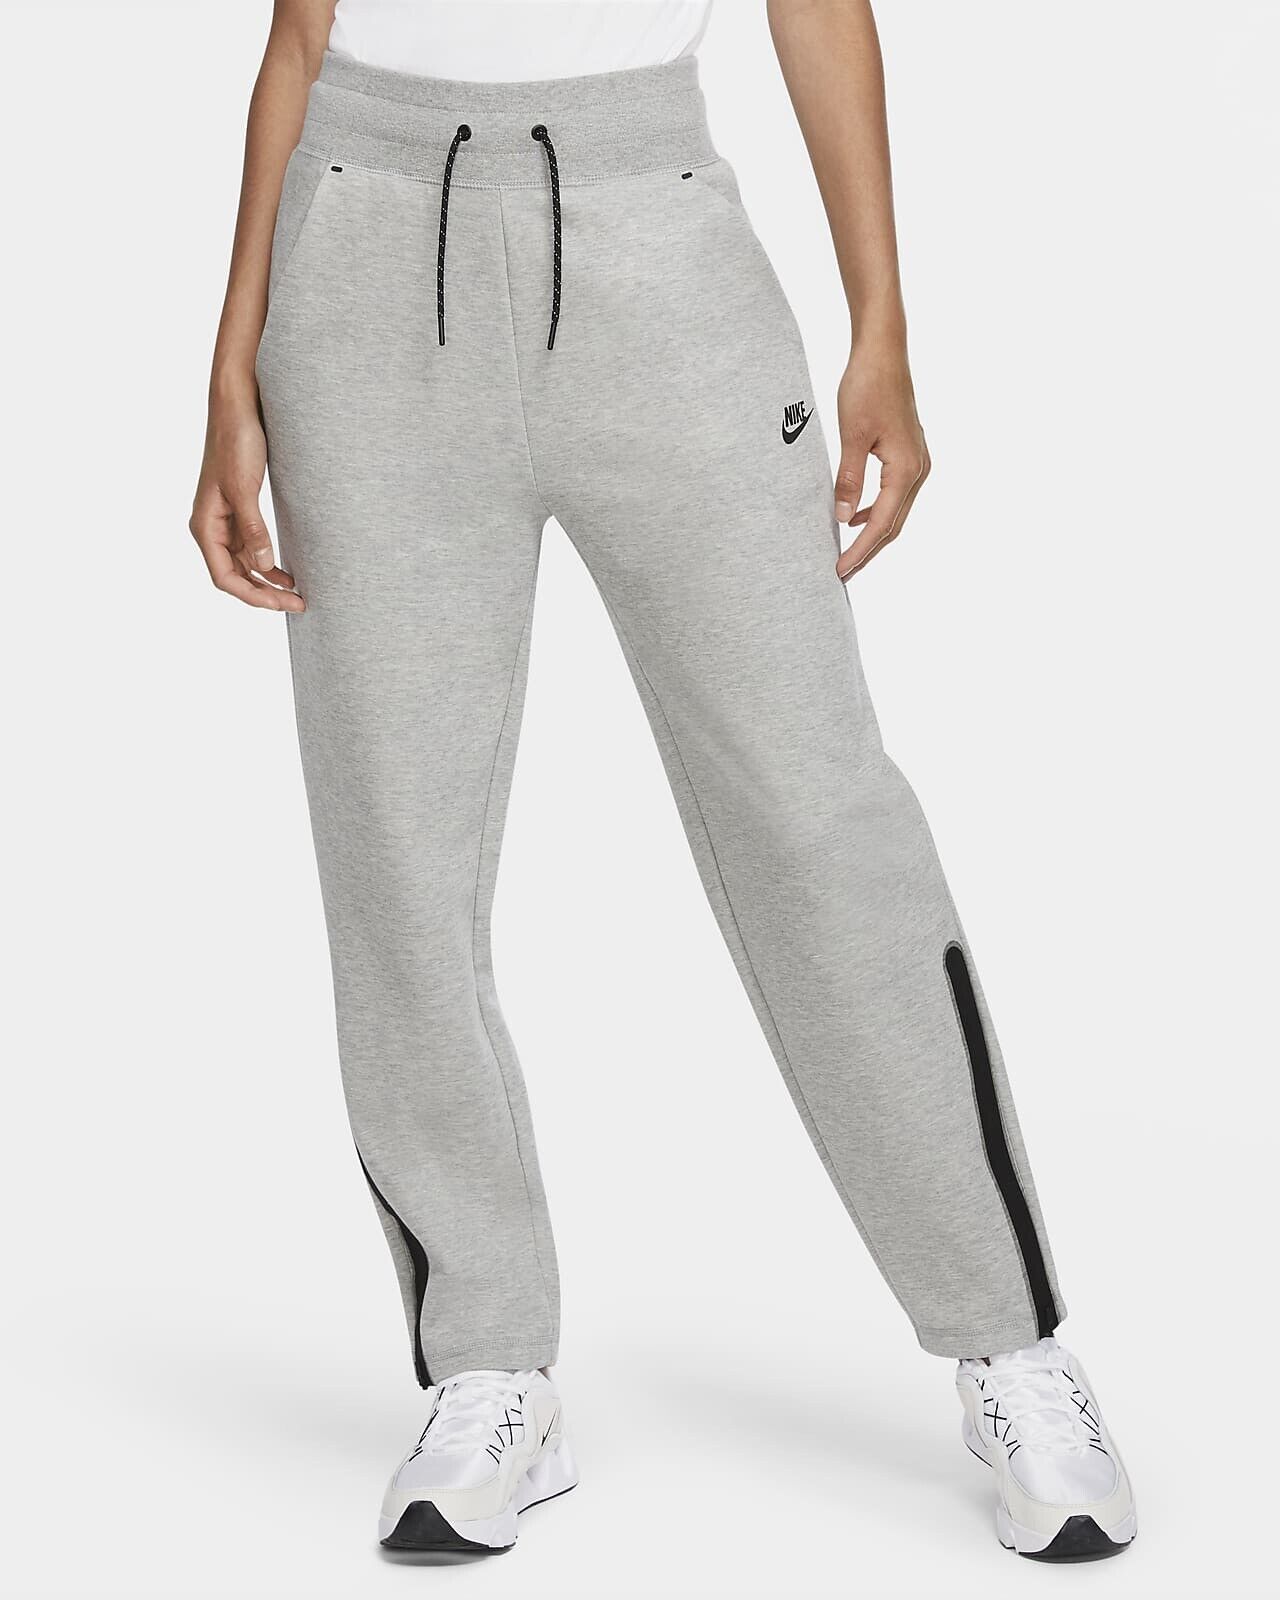 NWT Nike Sportswear Women's Tech Fleece Pants CW4294-010 - Grey - Tall | eBay